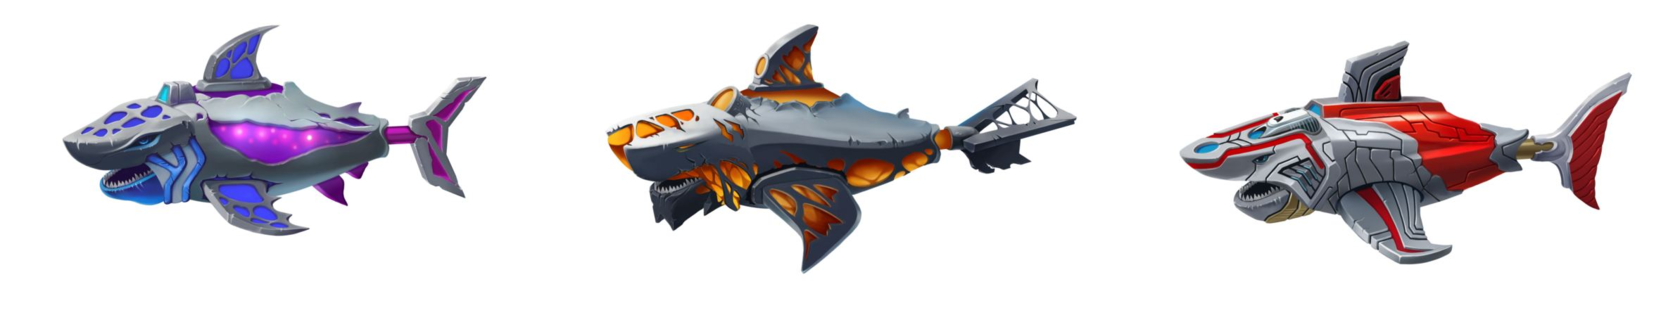 Core Shark, Rocket Shark and Titan Shark from Shark Battle game by Sharkrace